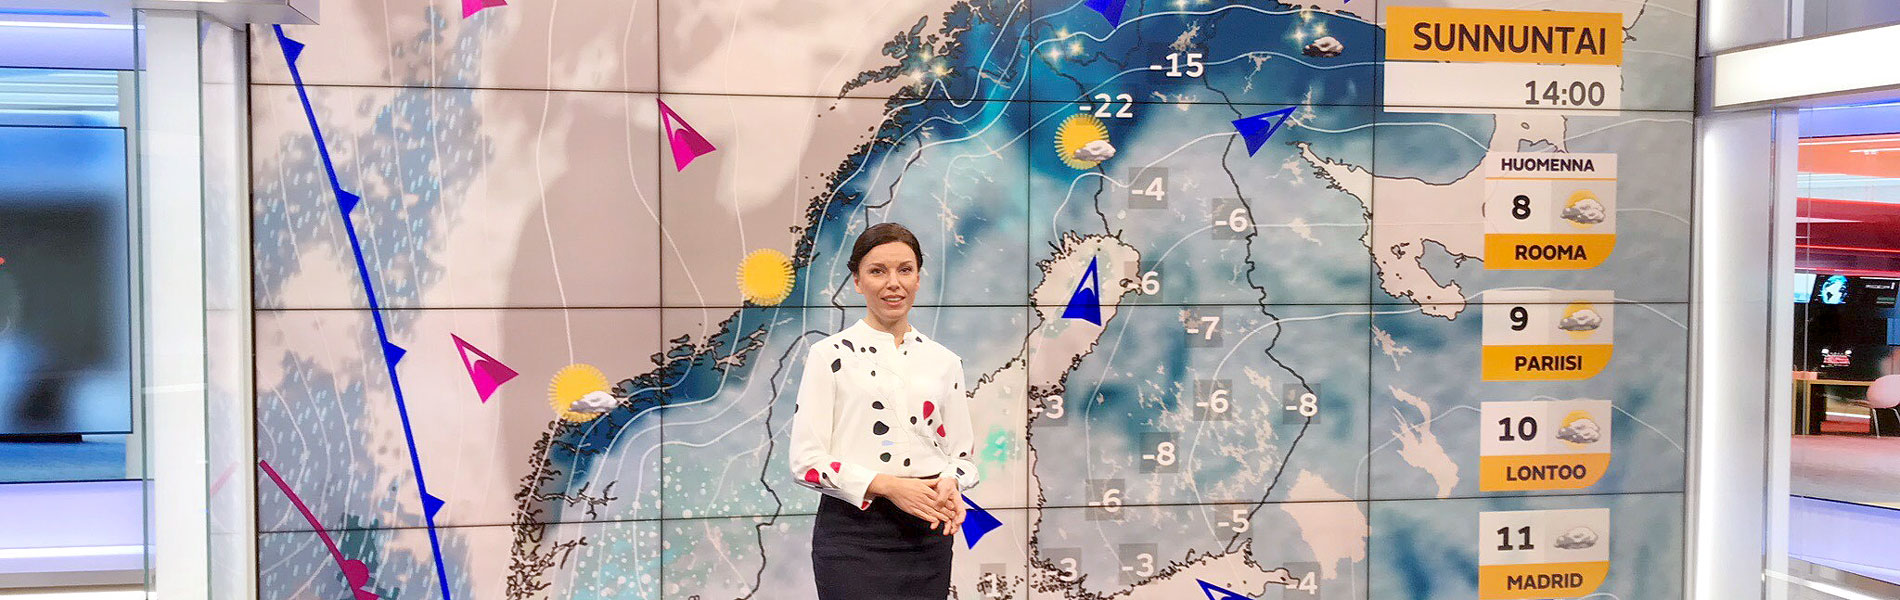 Meteorologi Liisa Rintaniemi: ”Luonnontieteistä on tärkeä puhua niin, että kaikki voivat ymmärtää”